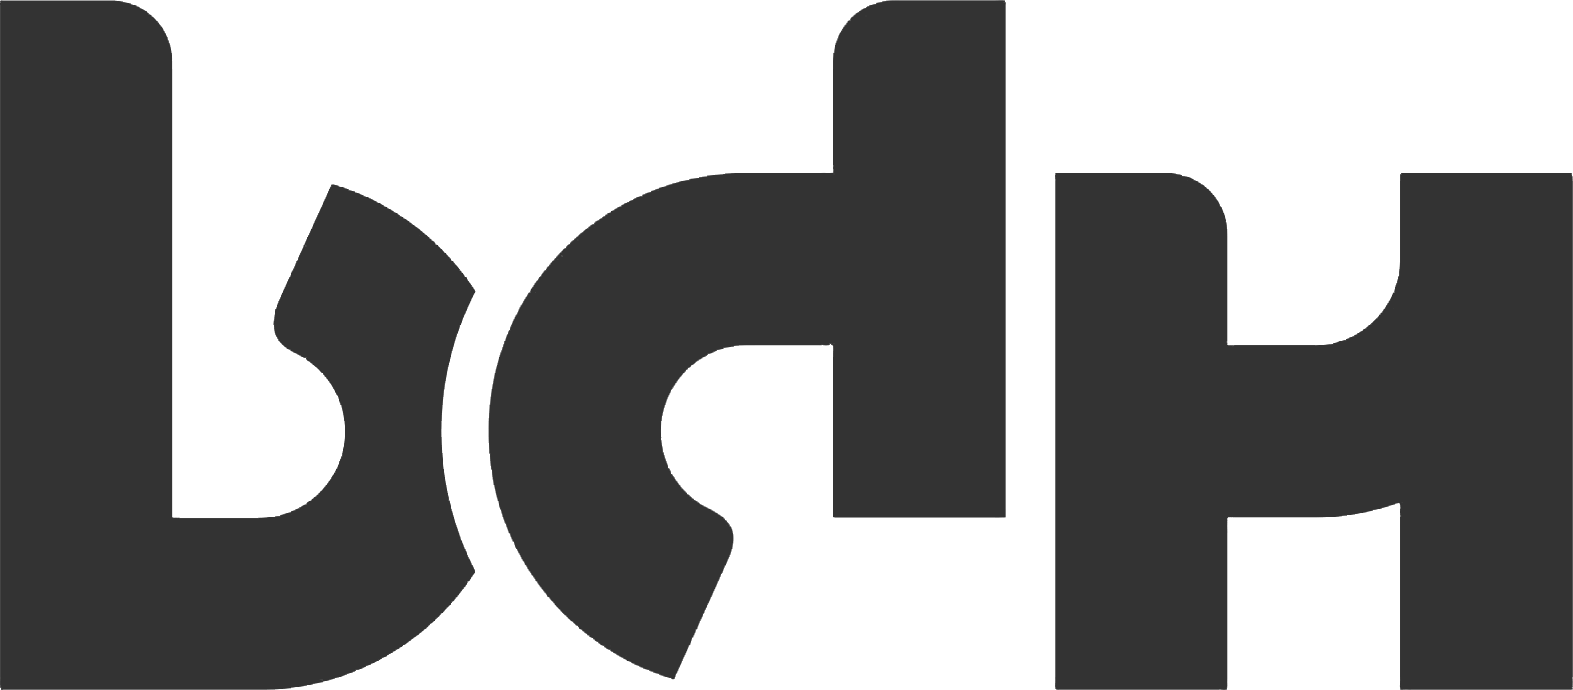 BDH Logo